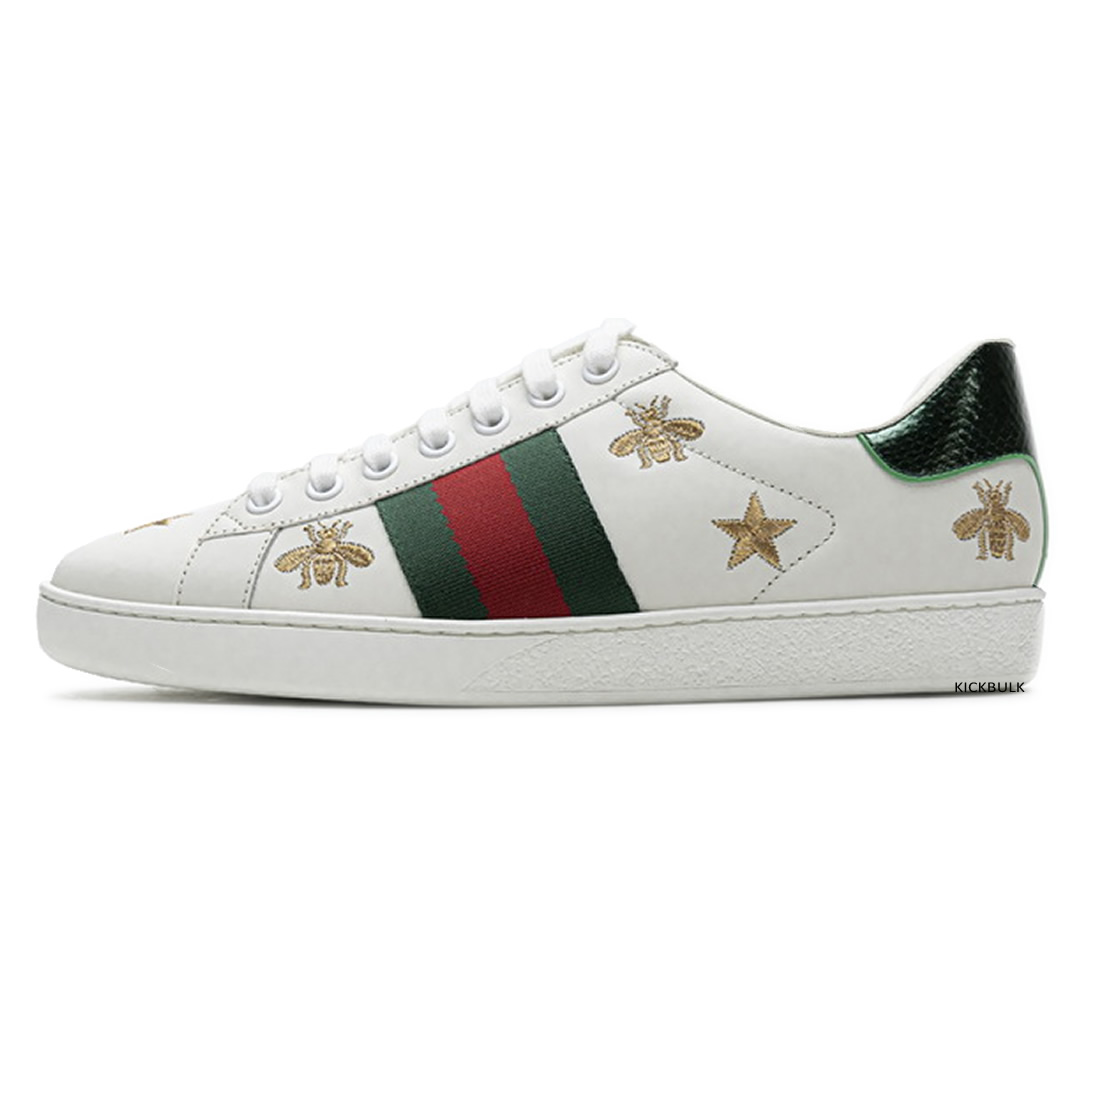 Gucci Stars Sneakers 429446a39gq9085 1 - kickbulk.org